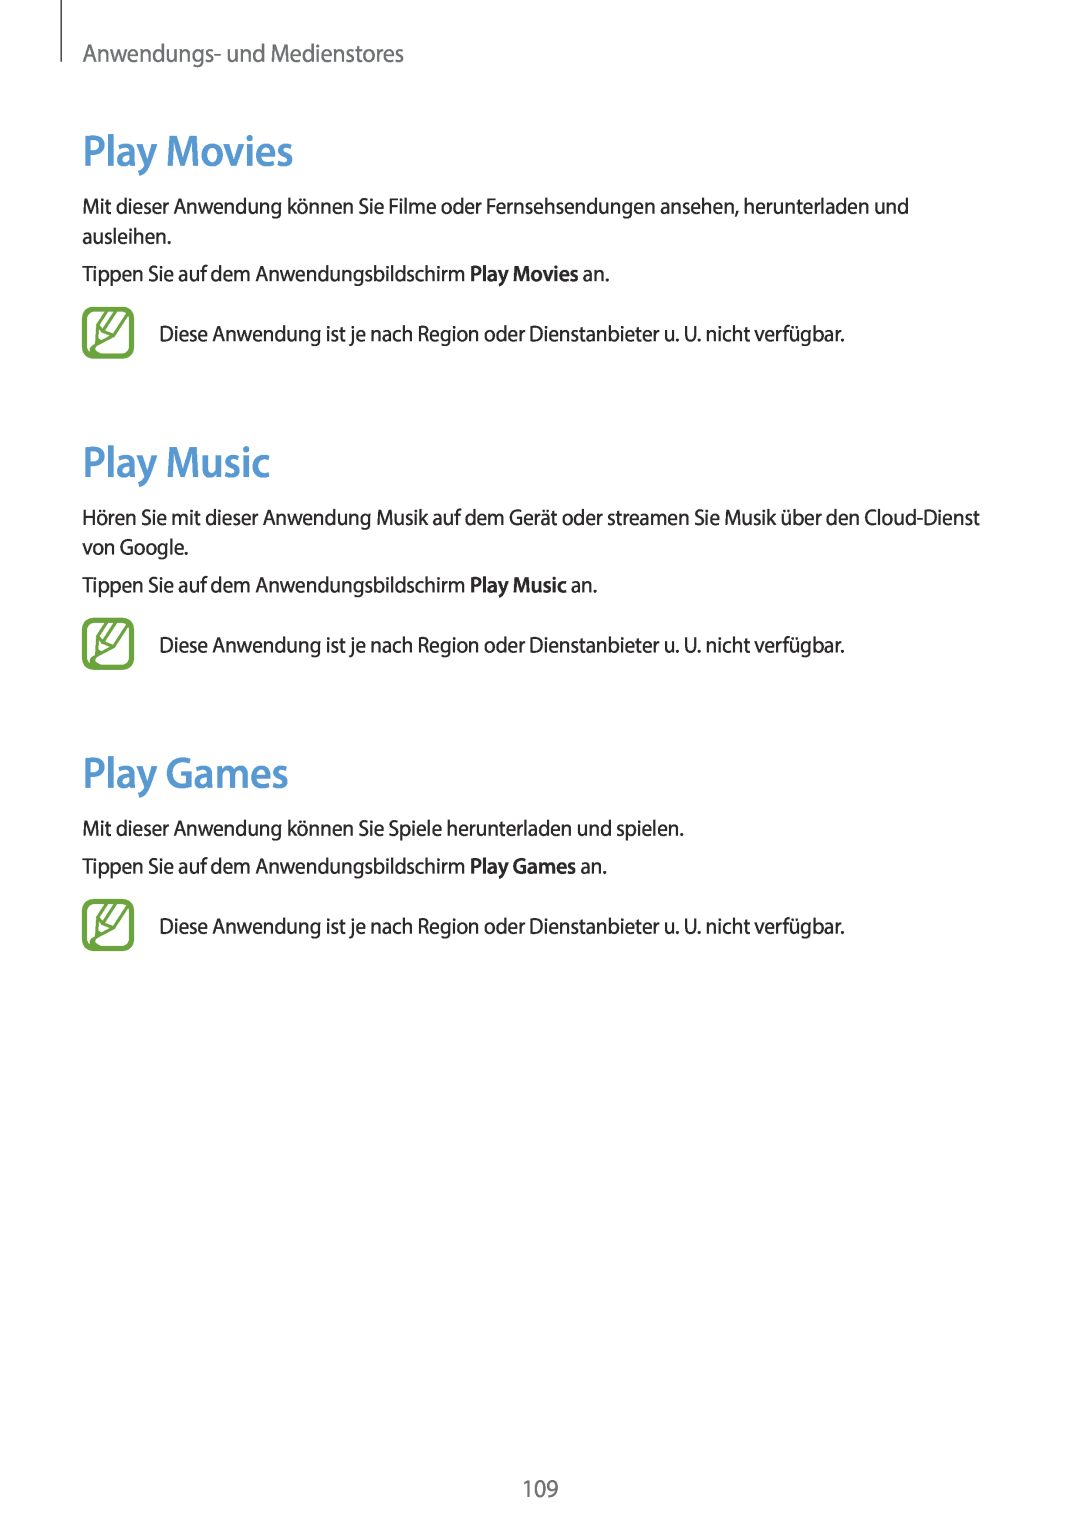 Samsung SM-N9005ZWEDTM, SM-N9005ZKEXEO, SM-N9005ZWEVD2 Play Movies, Play Music, Play Games, Anwendungs- und Medienstores 